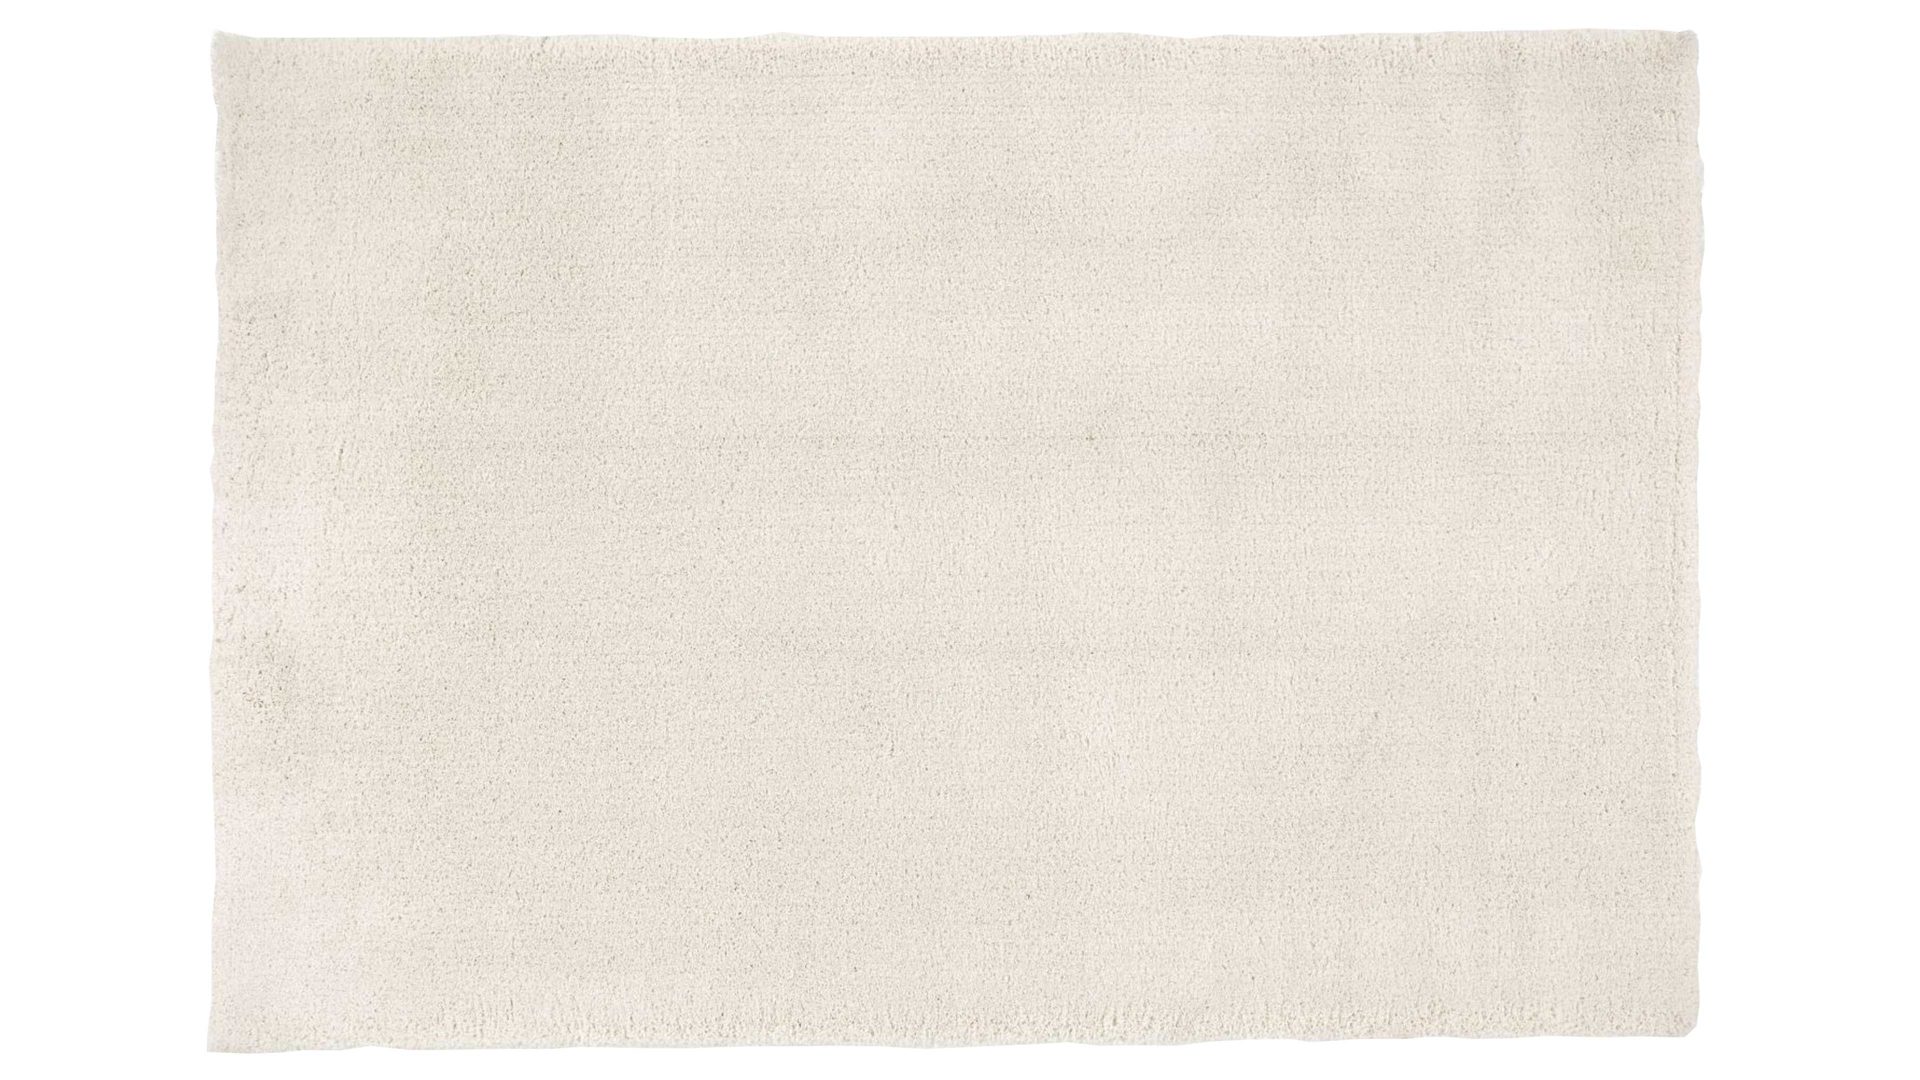 Shaggyteppich Oci aus Kunstfaser in Weiß Shaggyteppich Royal Shaggy für Ihre Wohnaccessoires cremefarbene Kunstfaser – ca. 140 x 200 cm